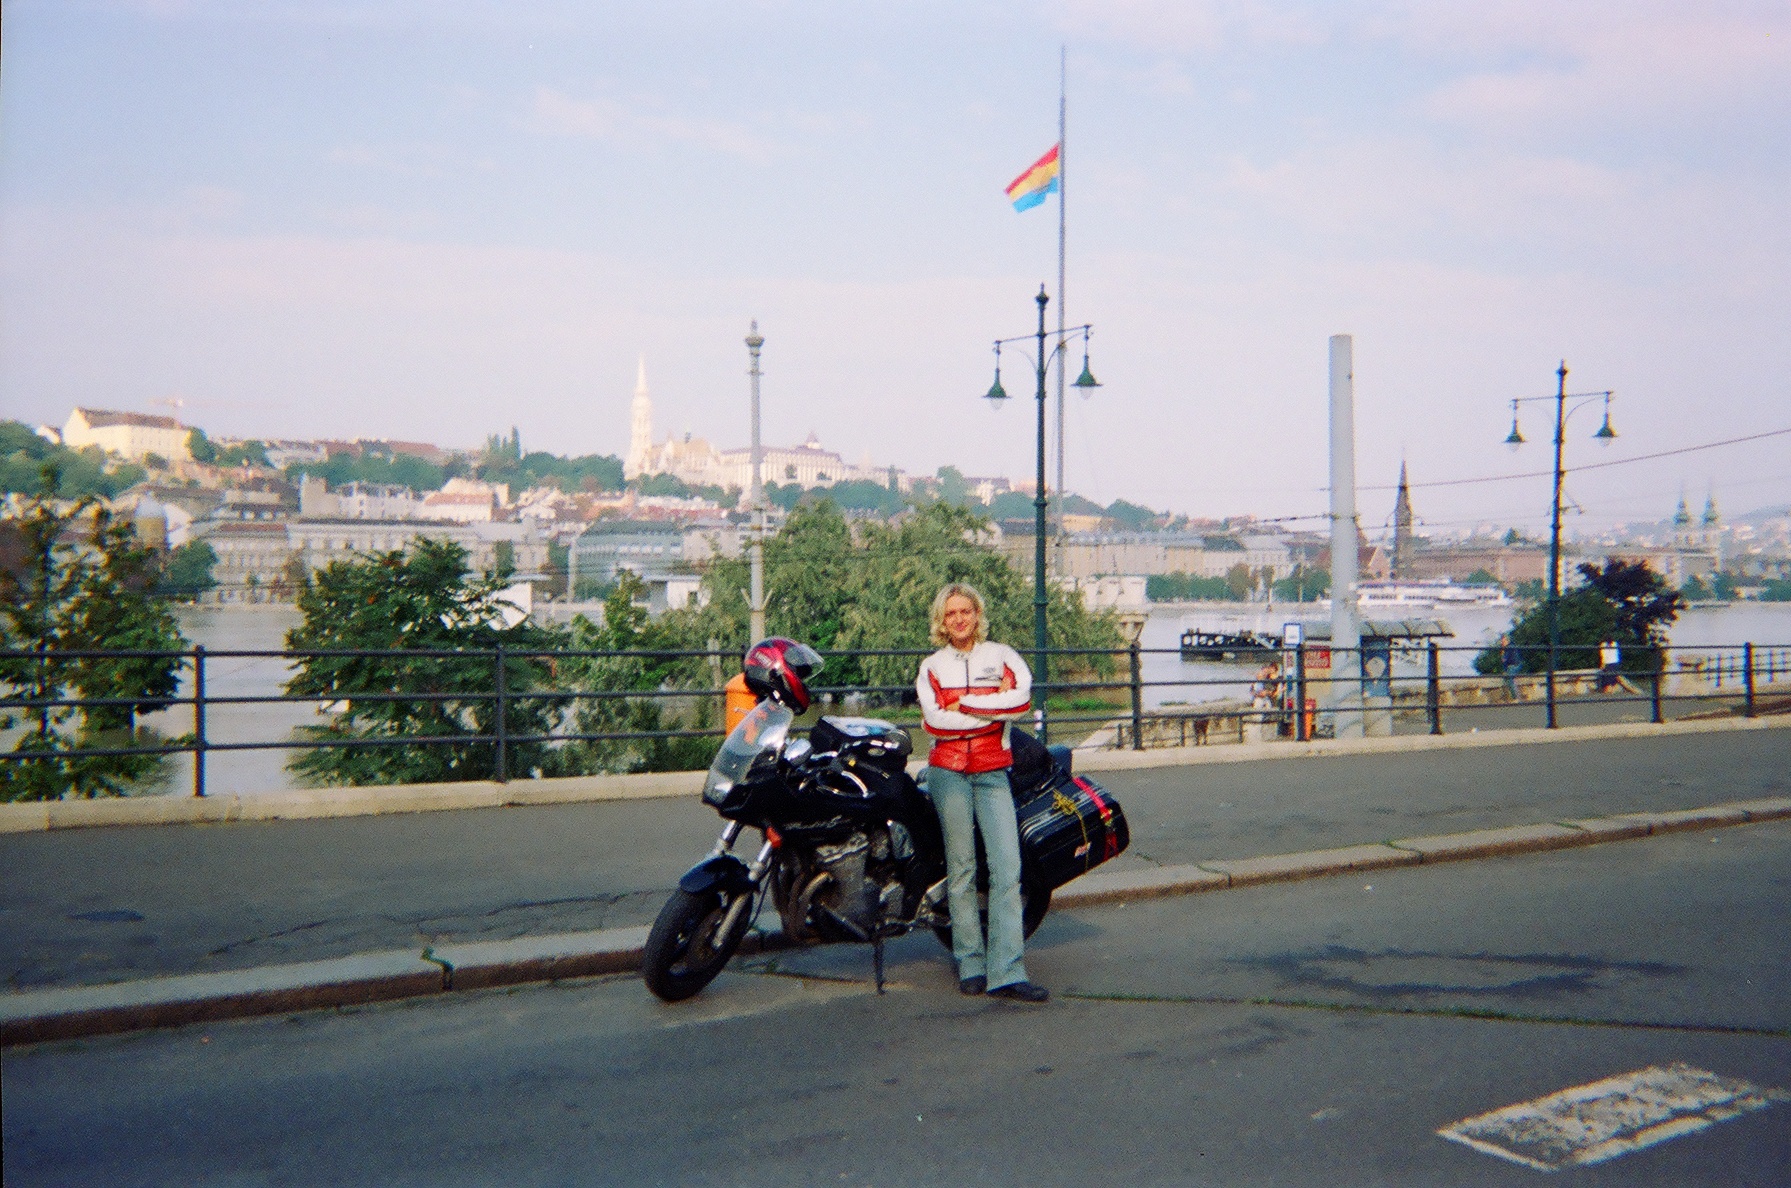 Zdjęcia Ania Jackowska Suzuki Bandit Madry motocyklista